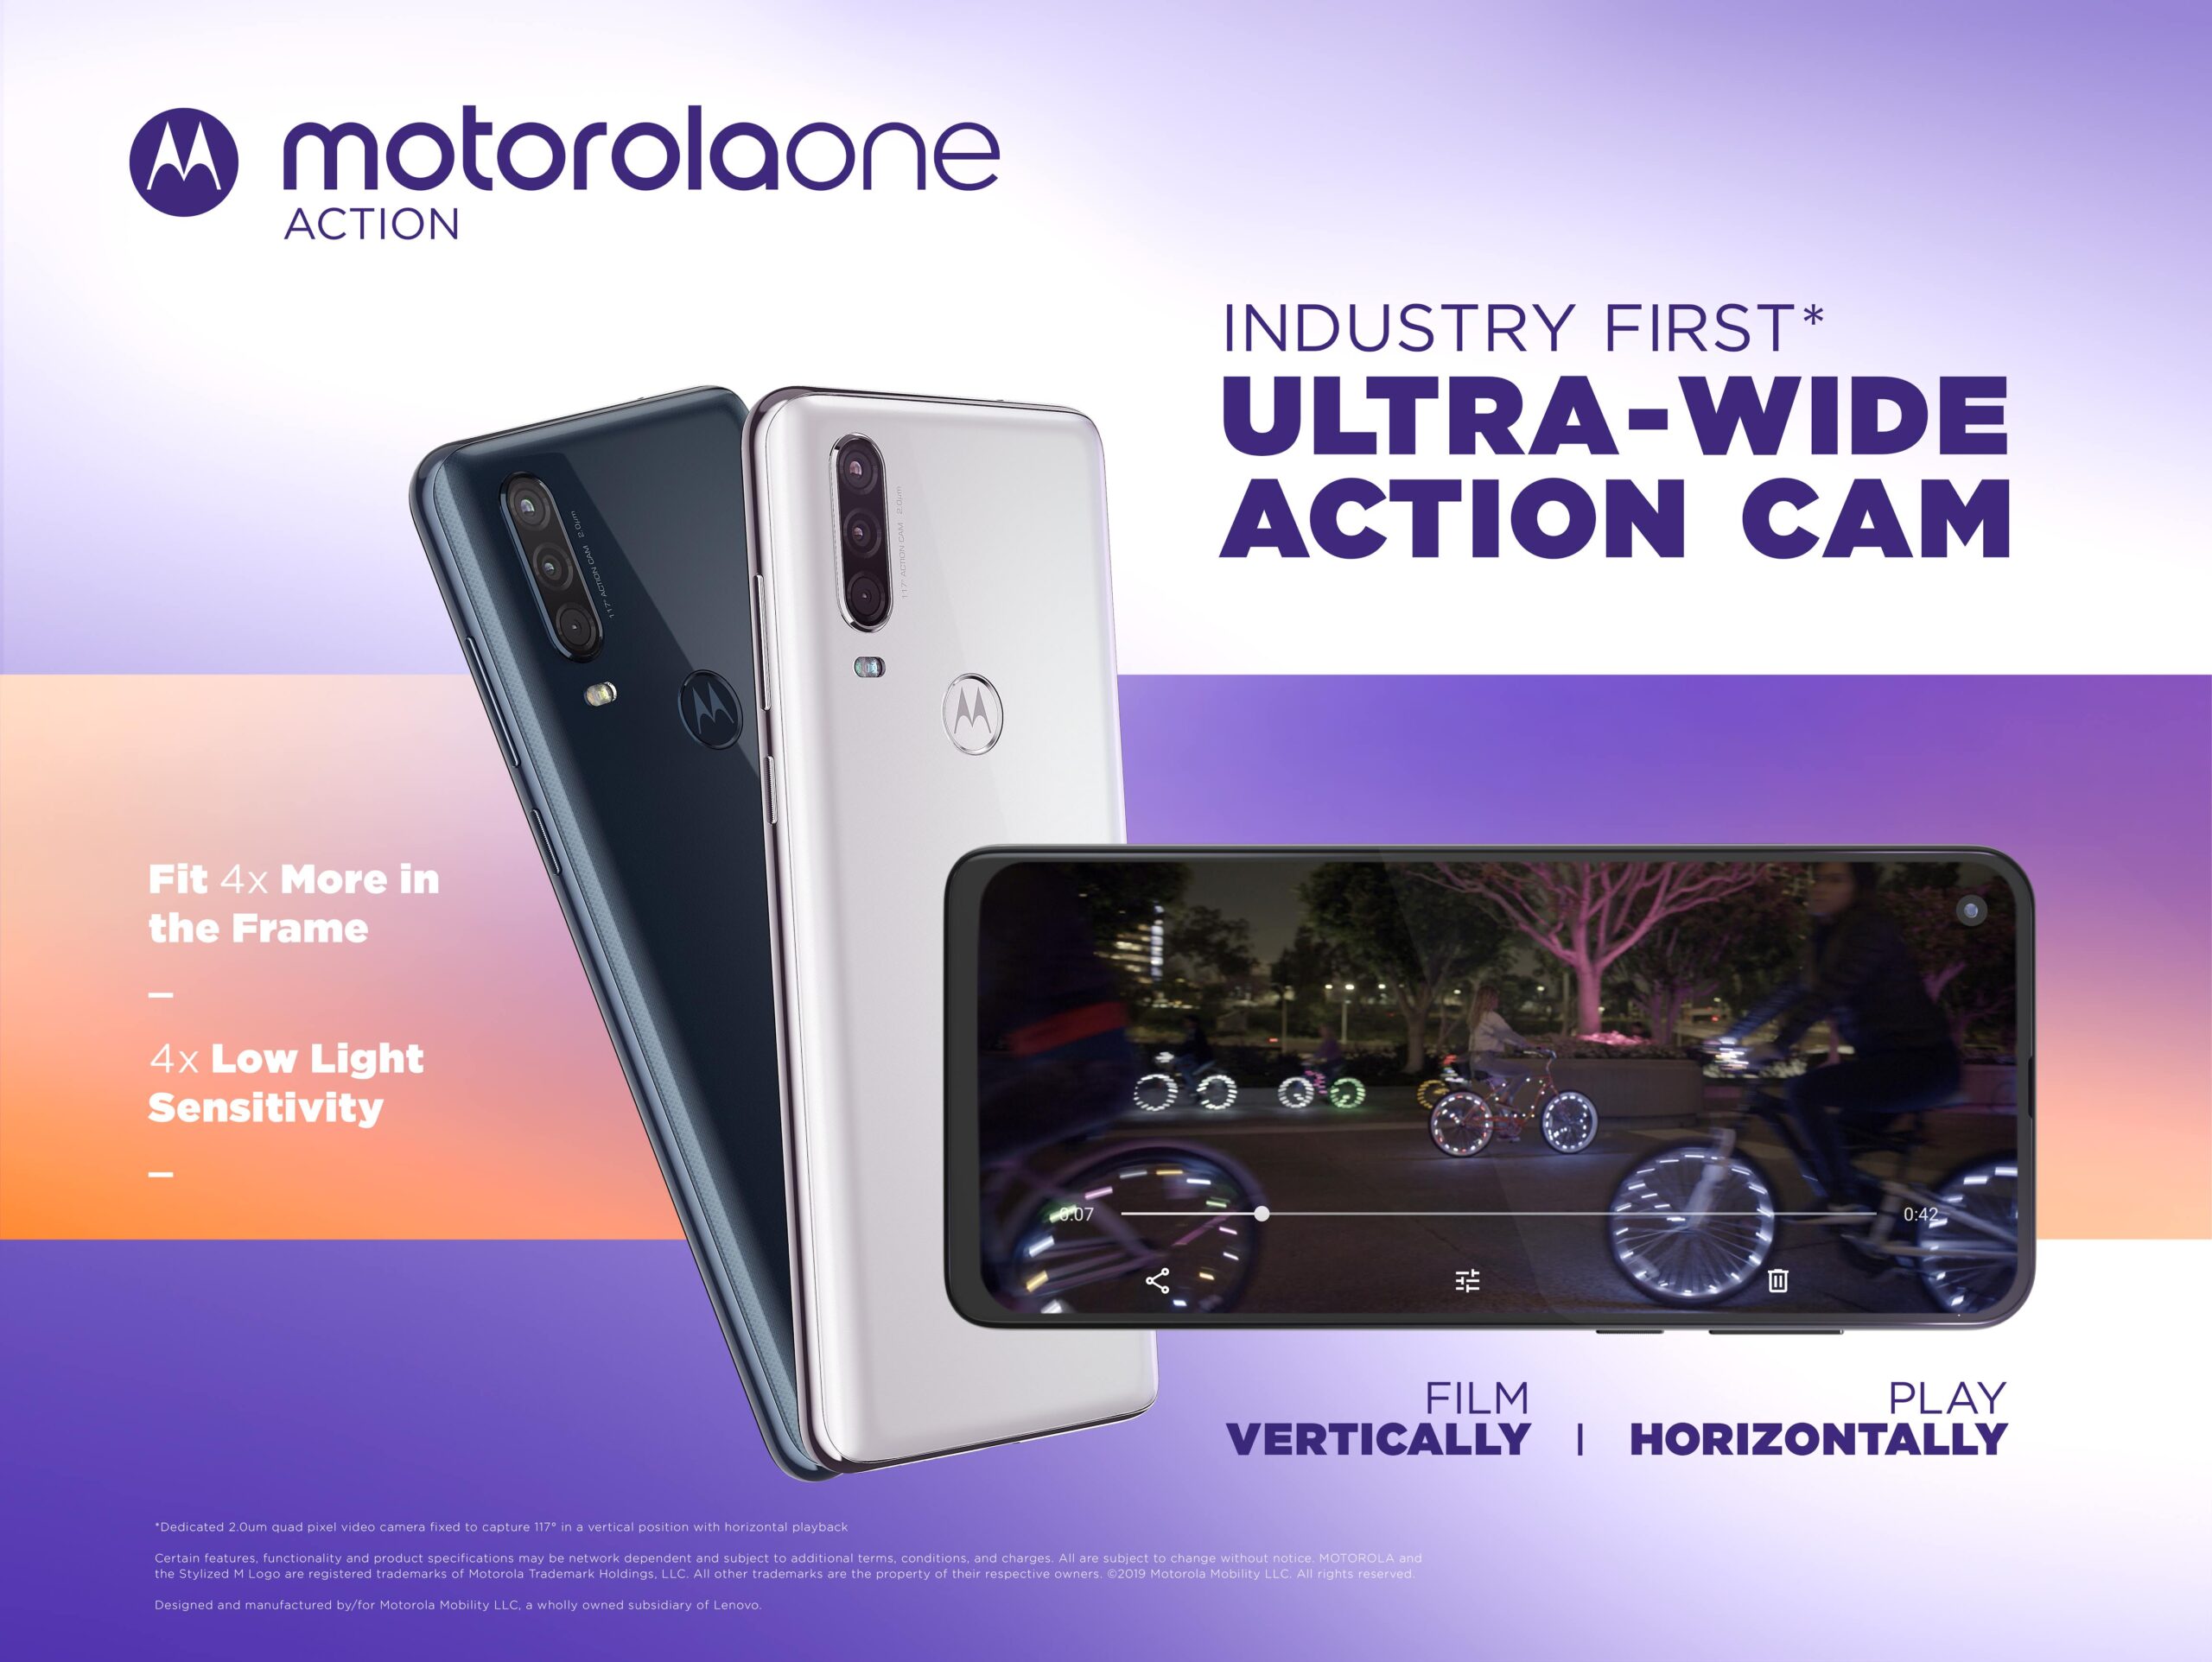 Motorola One Action записывает горизонтальное видео, удерживая его вертикально